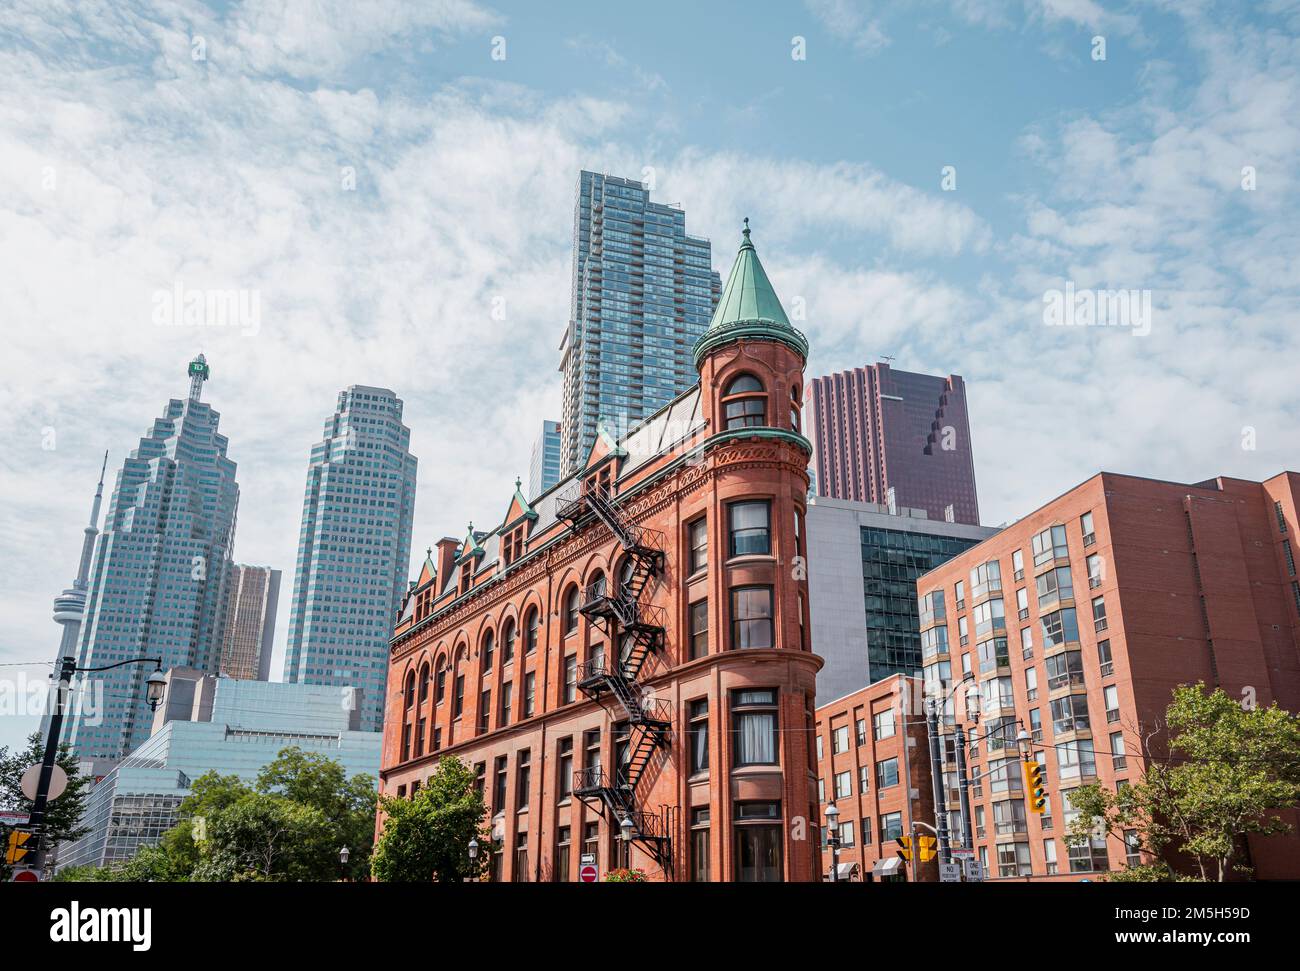 Toronto- Canada- Circa août 2019. Architecture nouvelle et ancienne au centre-ville de Toronto. Bâtiment Gooderham le bâtiment Flatiron connu a été achevé en 1892. Arche Banque D'Images